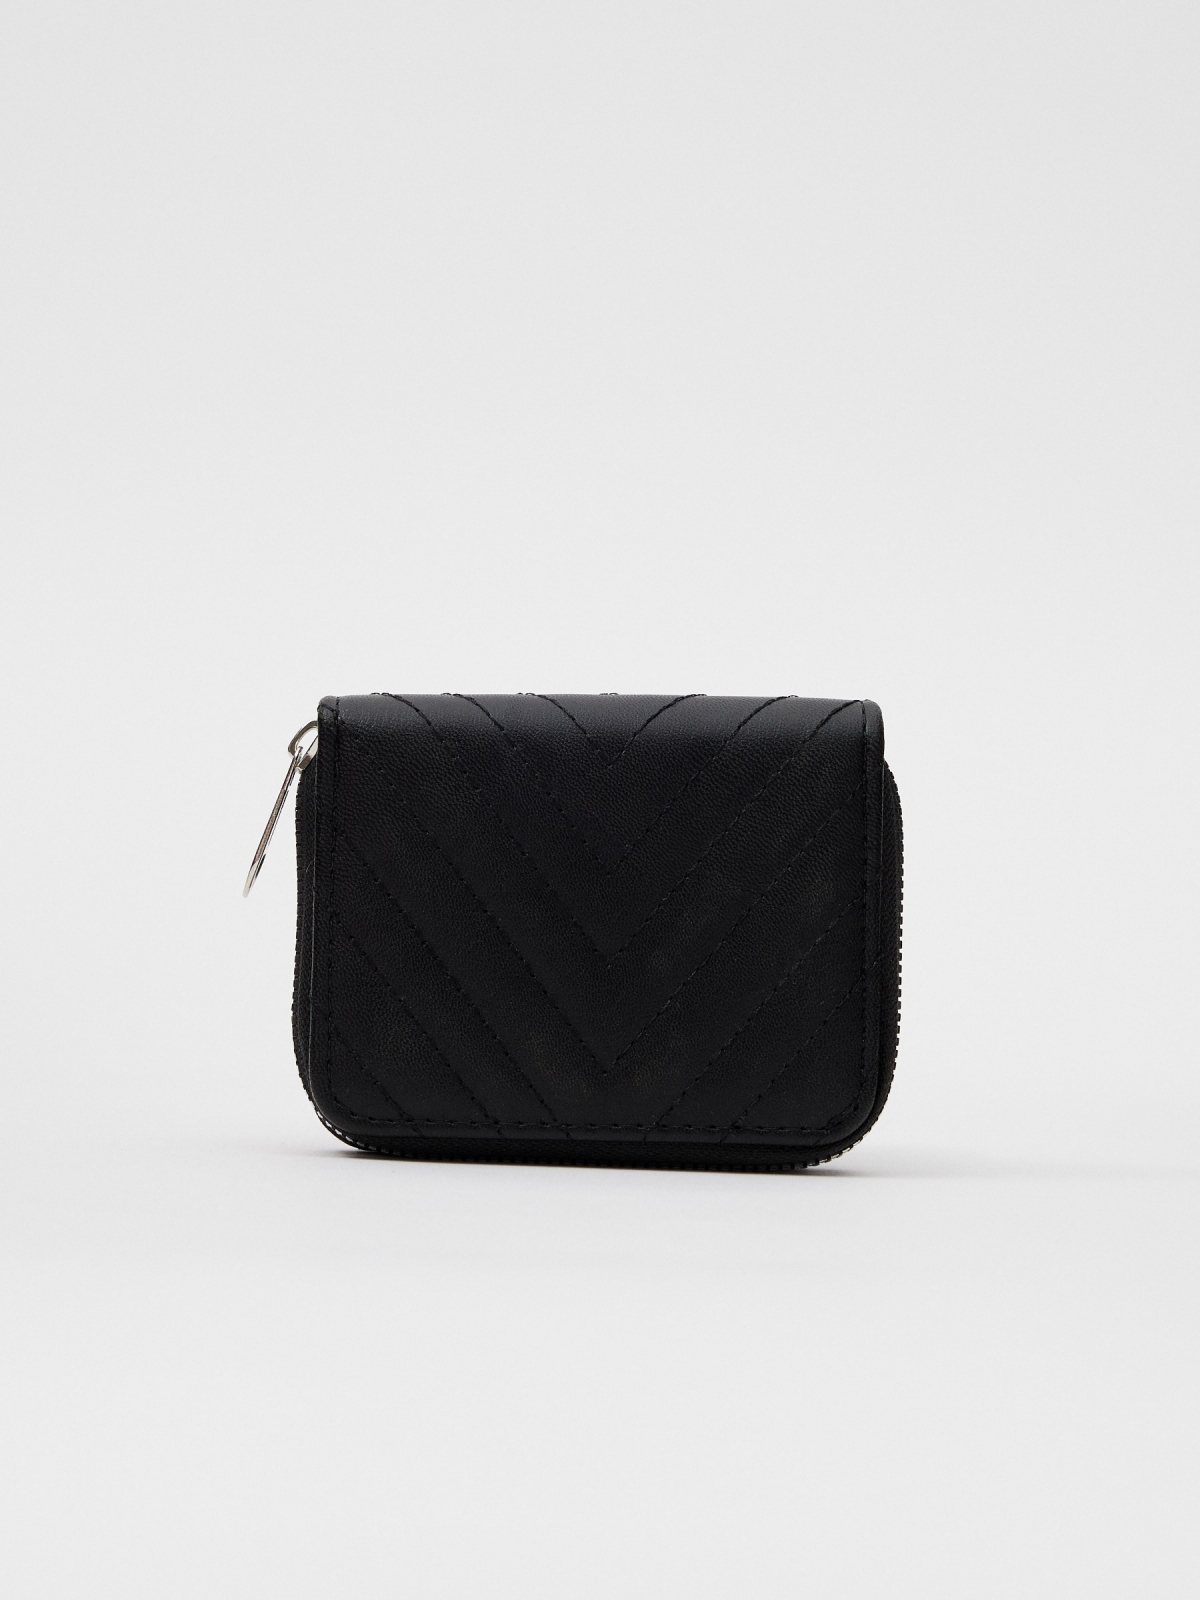 Women's leatherette wallet